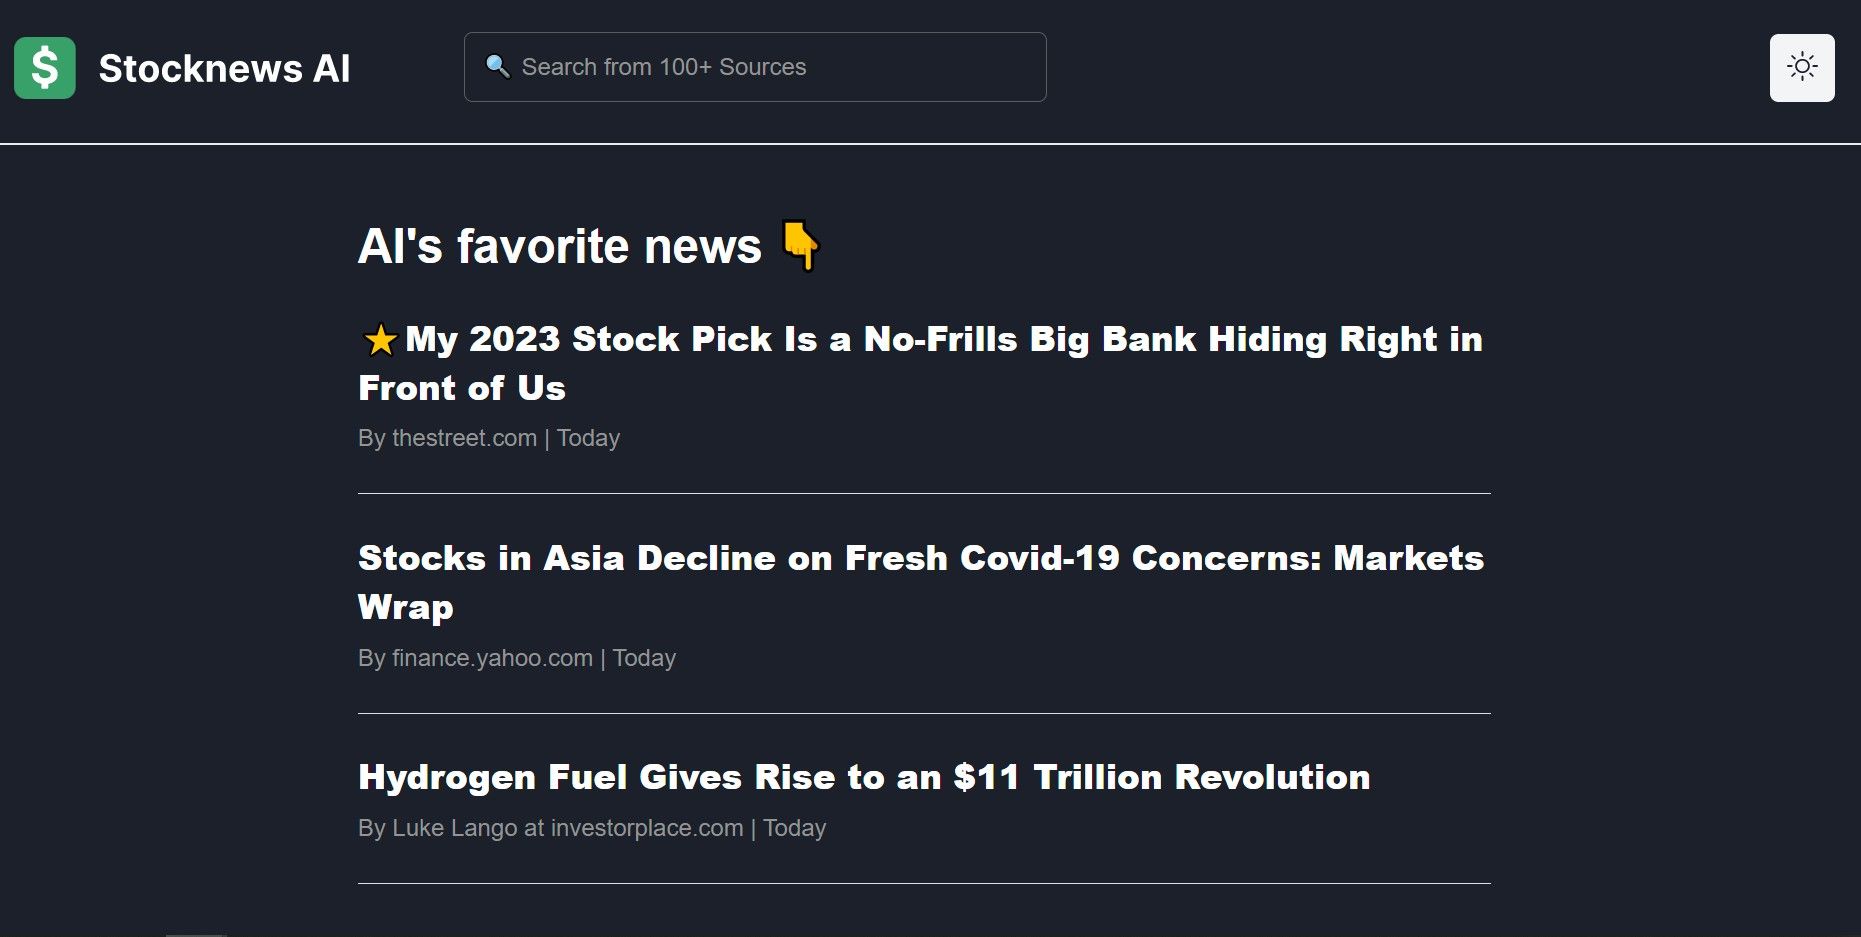 Stocknews AI